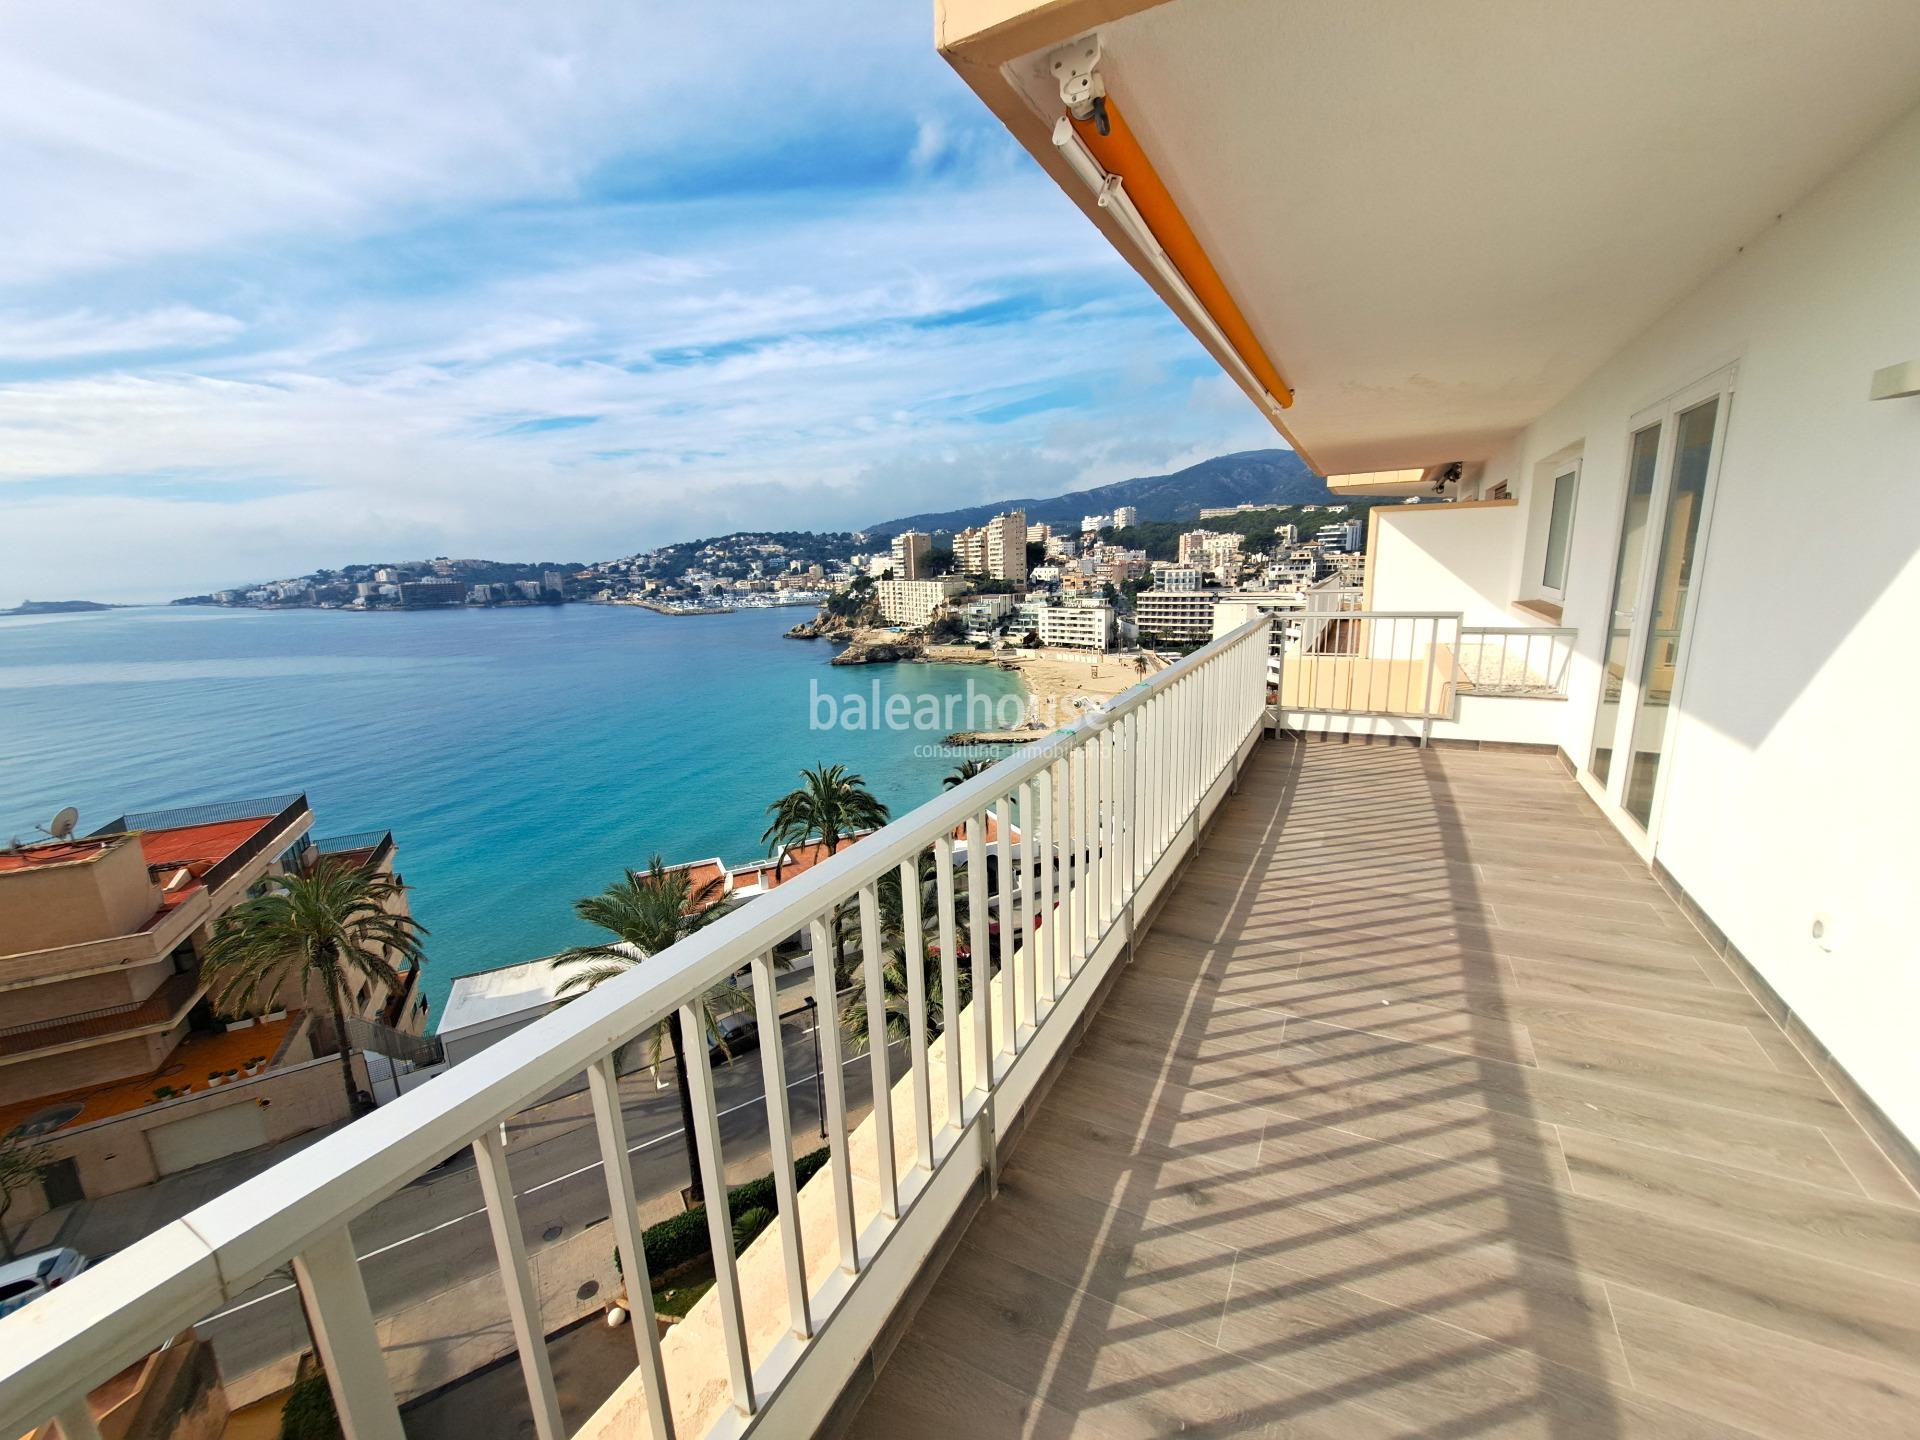 Renovierte Wohnung mit großer Terrasse und spektakulärem Meerblick, nur wenige Schritte vom Strand.